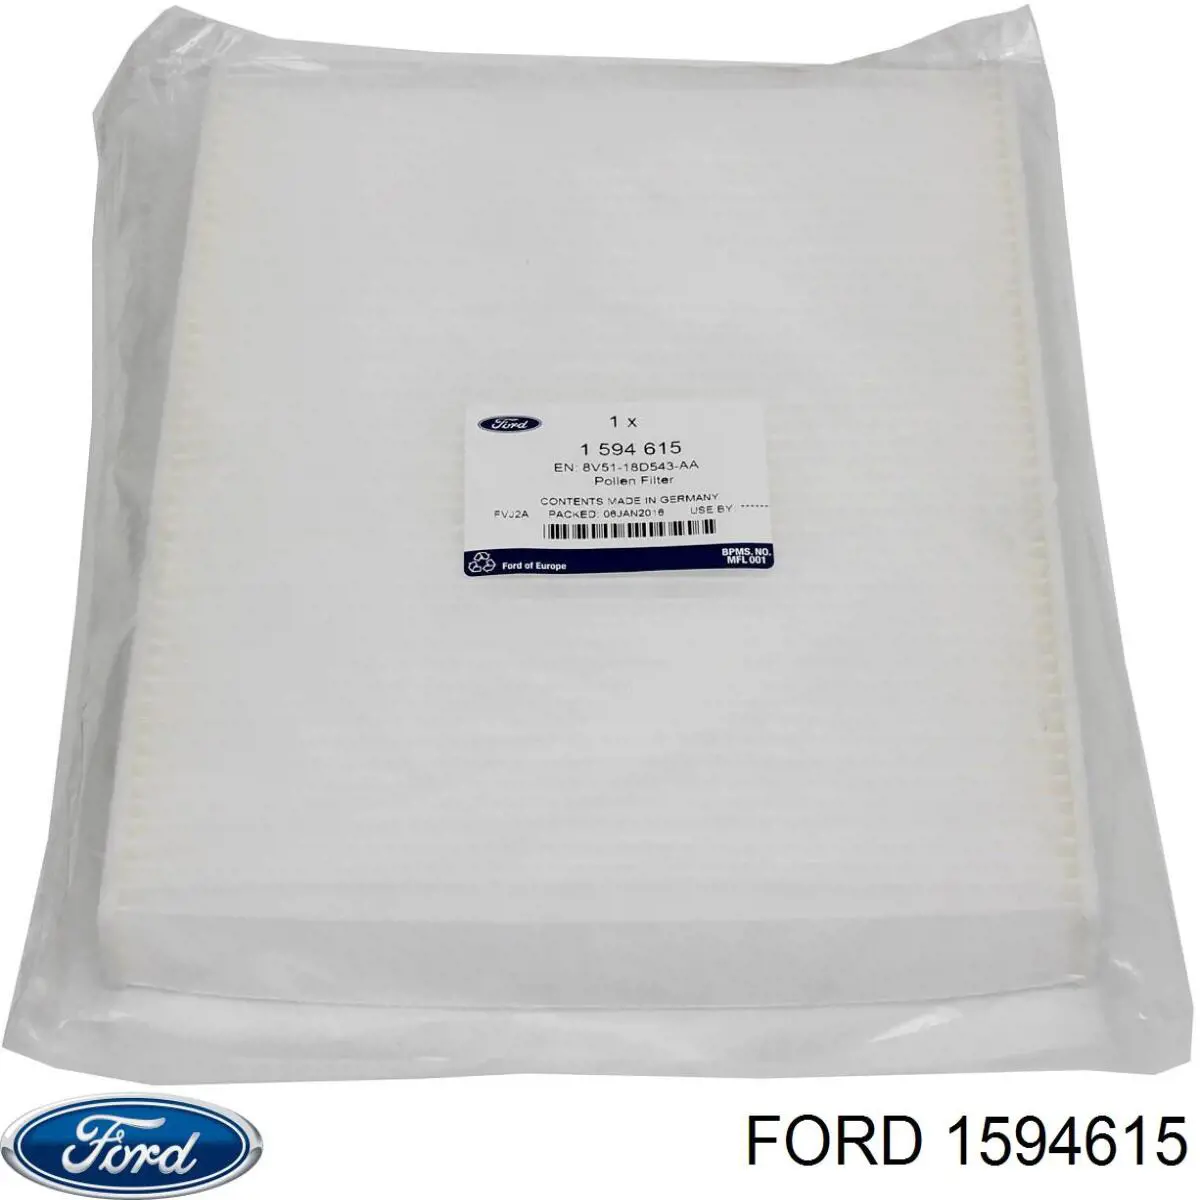 1594615 Ford filtro habitáculo